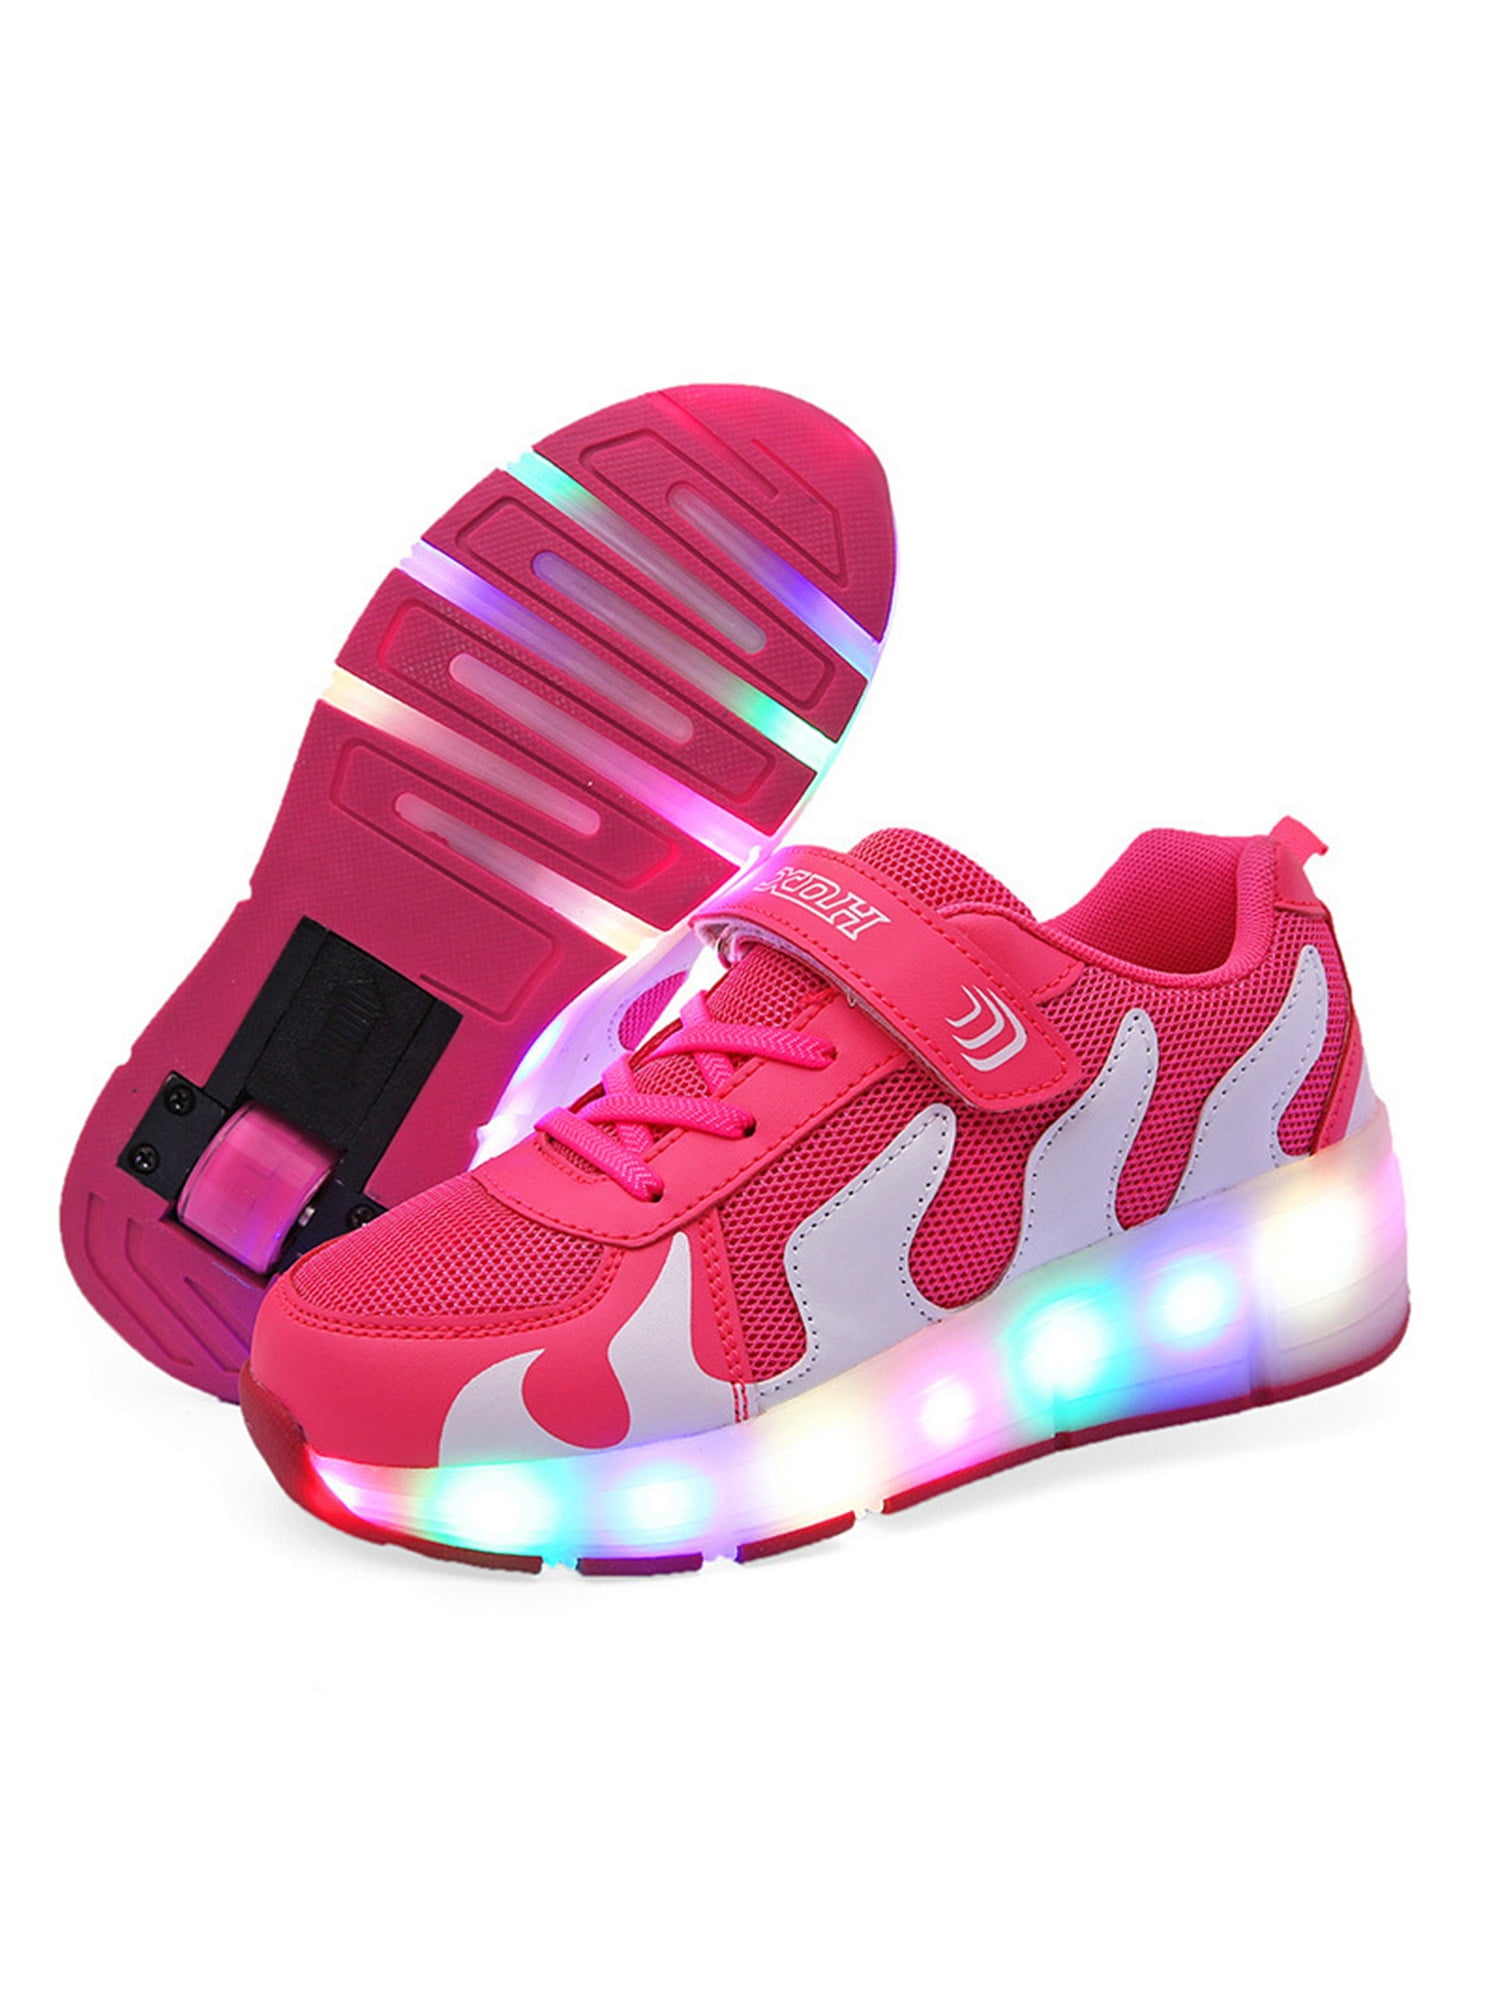 Chic Unisex Boys Girls LED Lighting Single Wheel Roller Skate Sneakers Little Kid/Big Kid